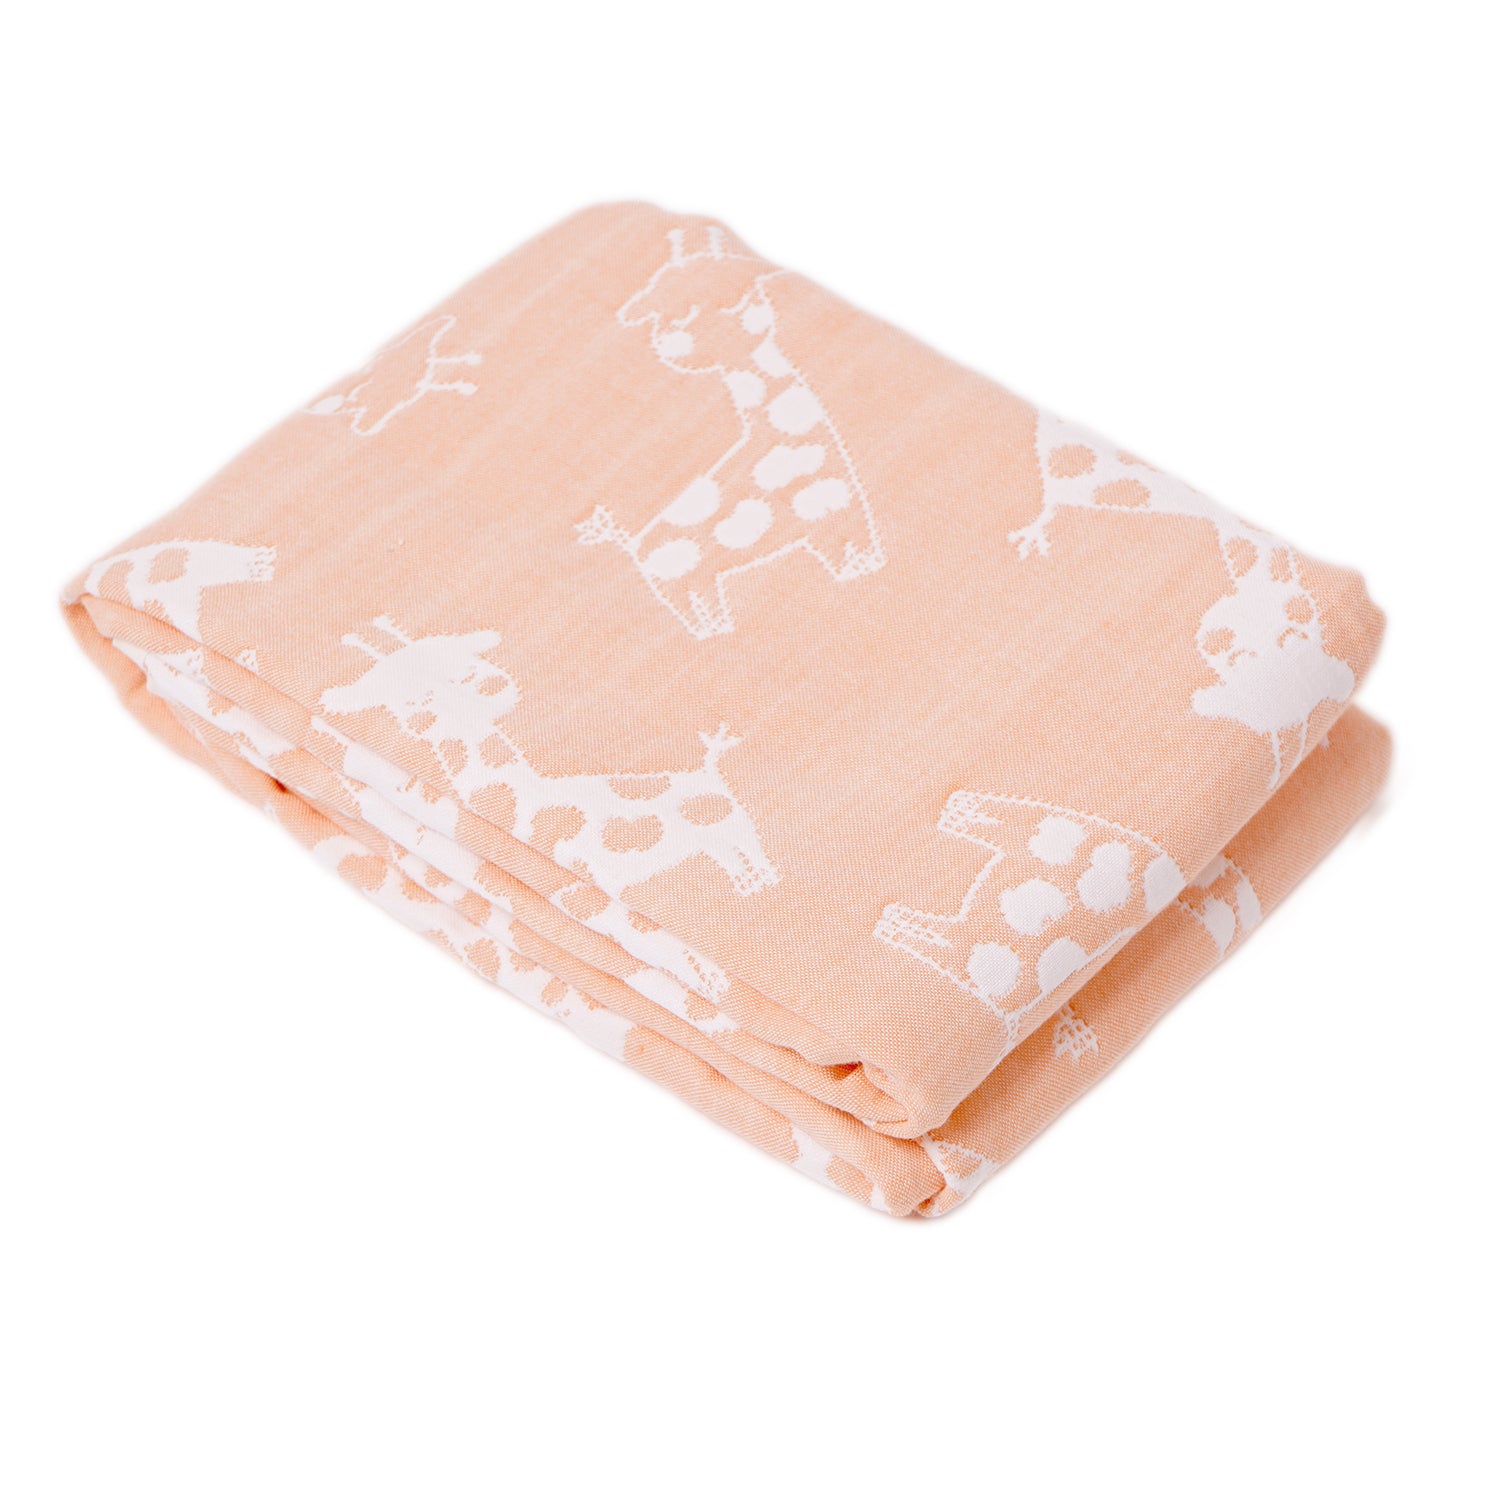 Organic Cotton Yarn Dyed Blanket - Pink